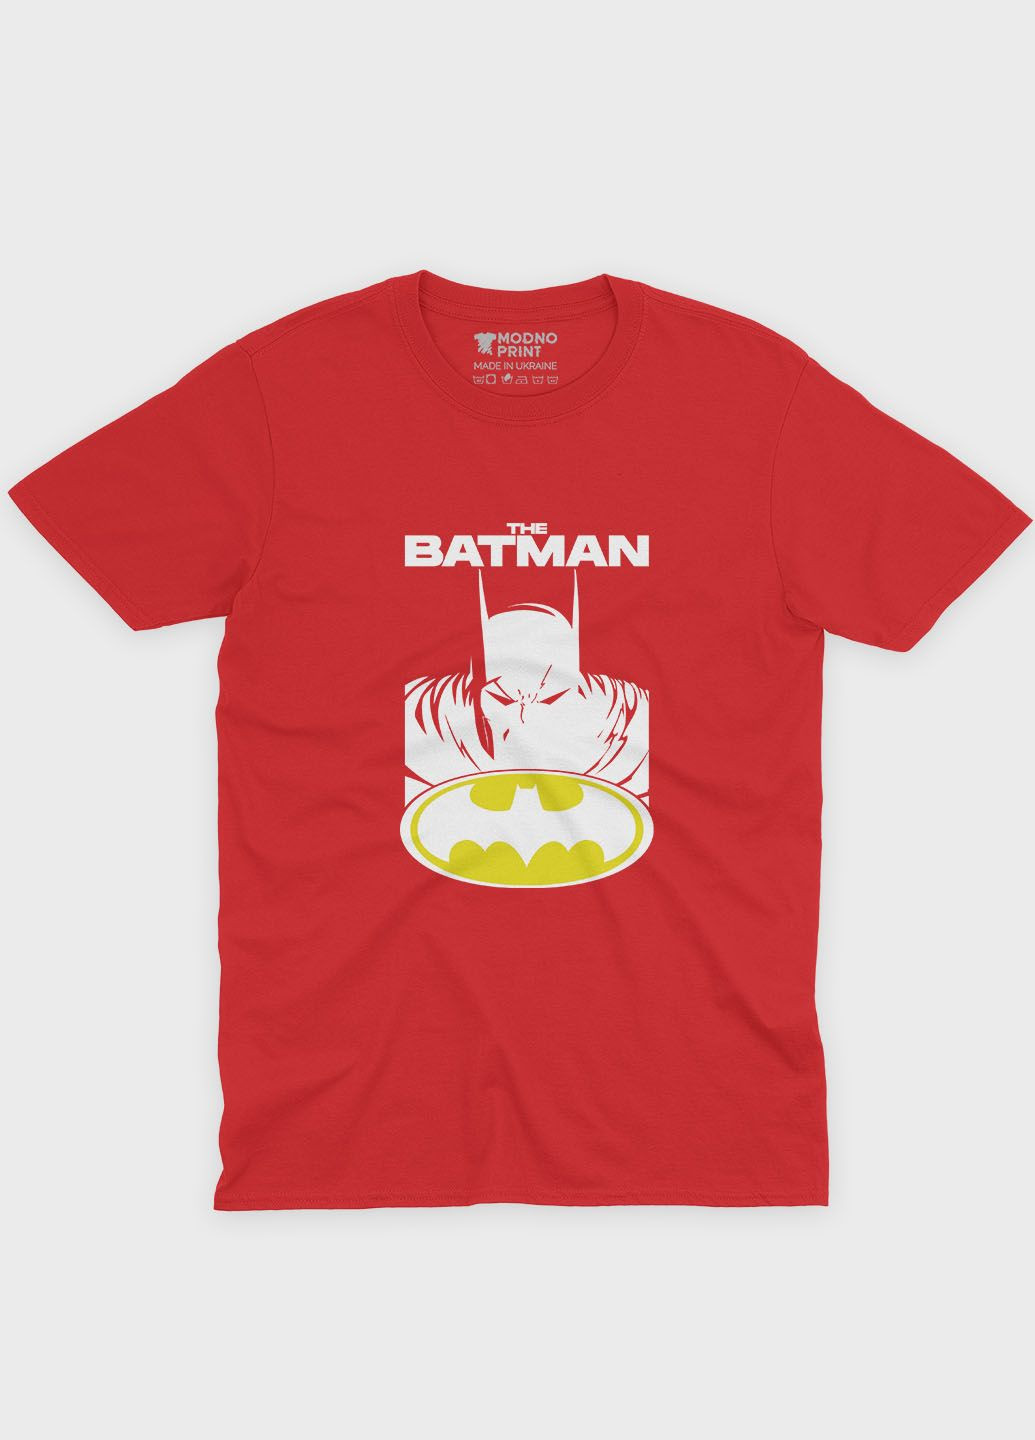 Красная демисезонная футболка для девочки с принтом супергероя - бэтмен (ts001-1-sre-006-003-019-g) Modno